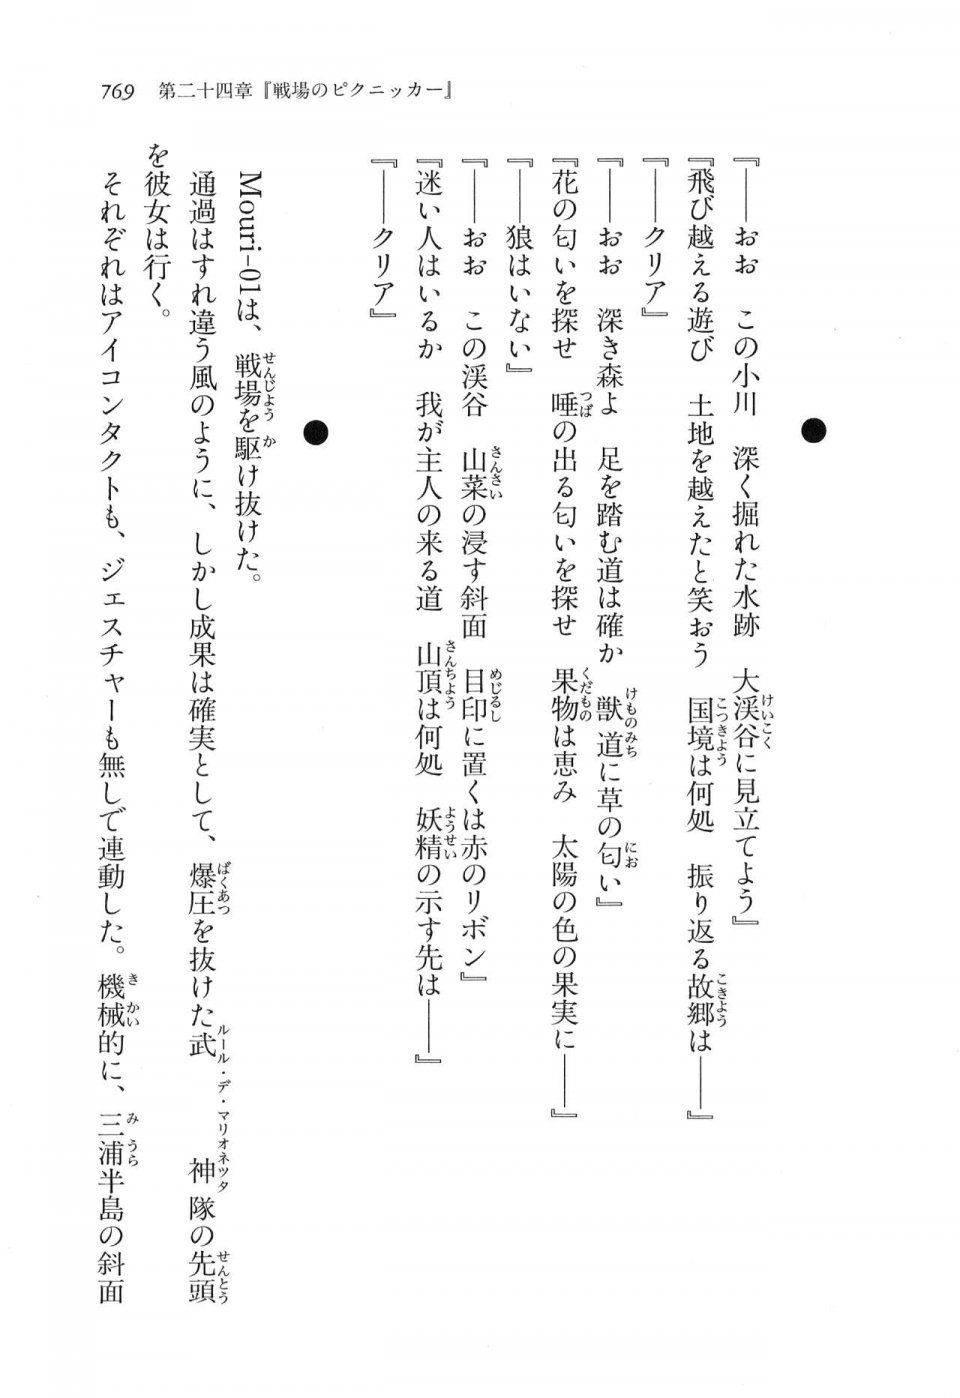 Kyoukai Senjou no Horizon LN Vol 16(7A) - Photo #769